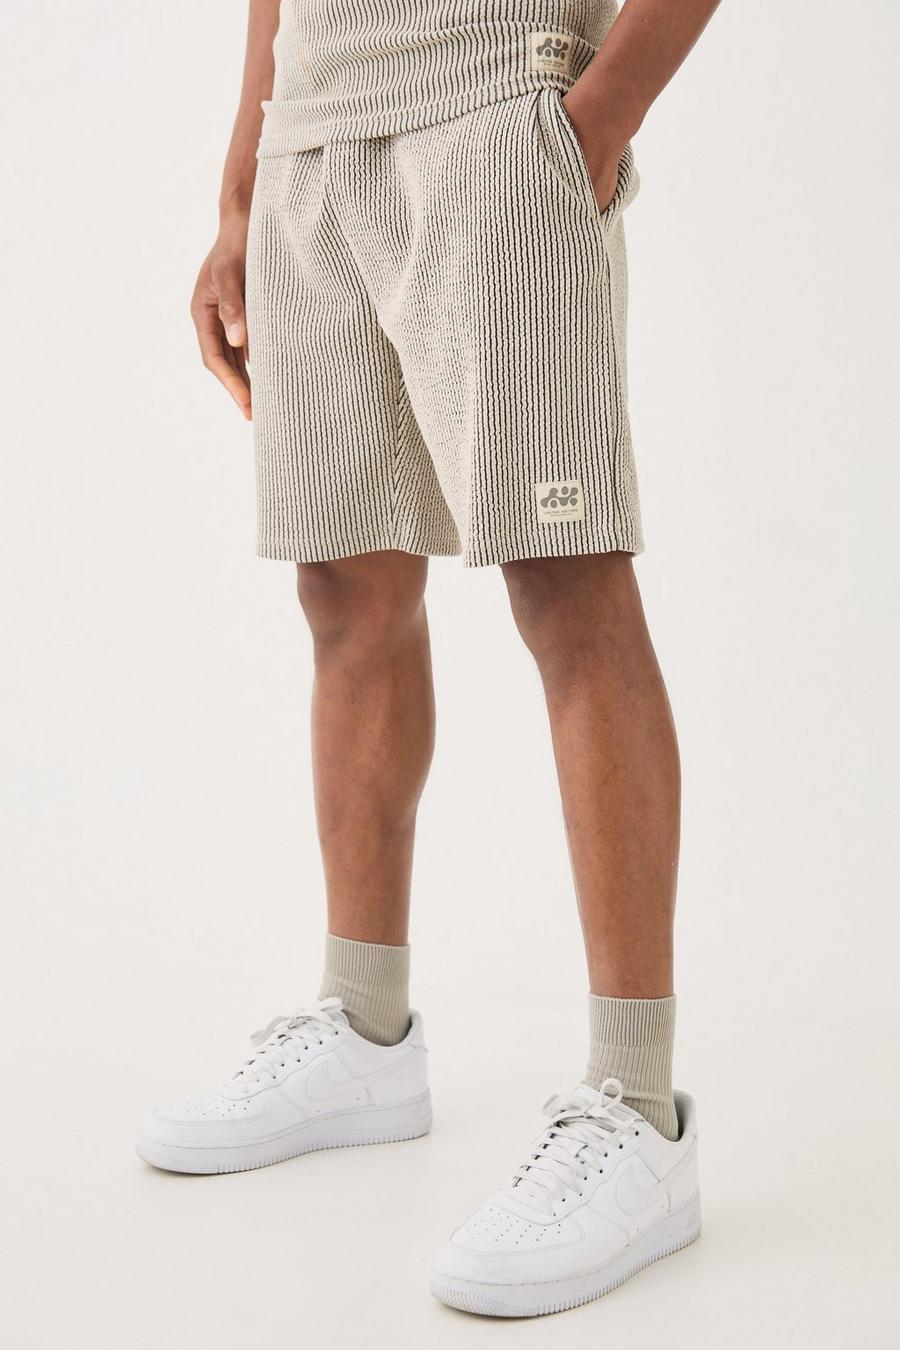 Pantalón corto holgado texturizado de largo medio con etiqueta de tela, Grey